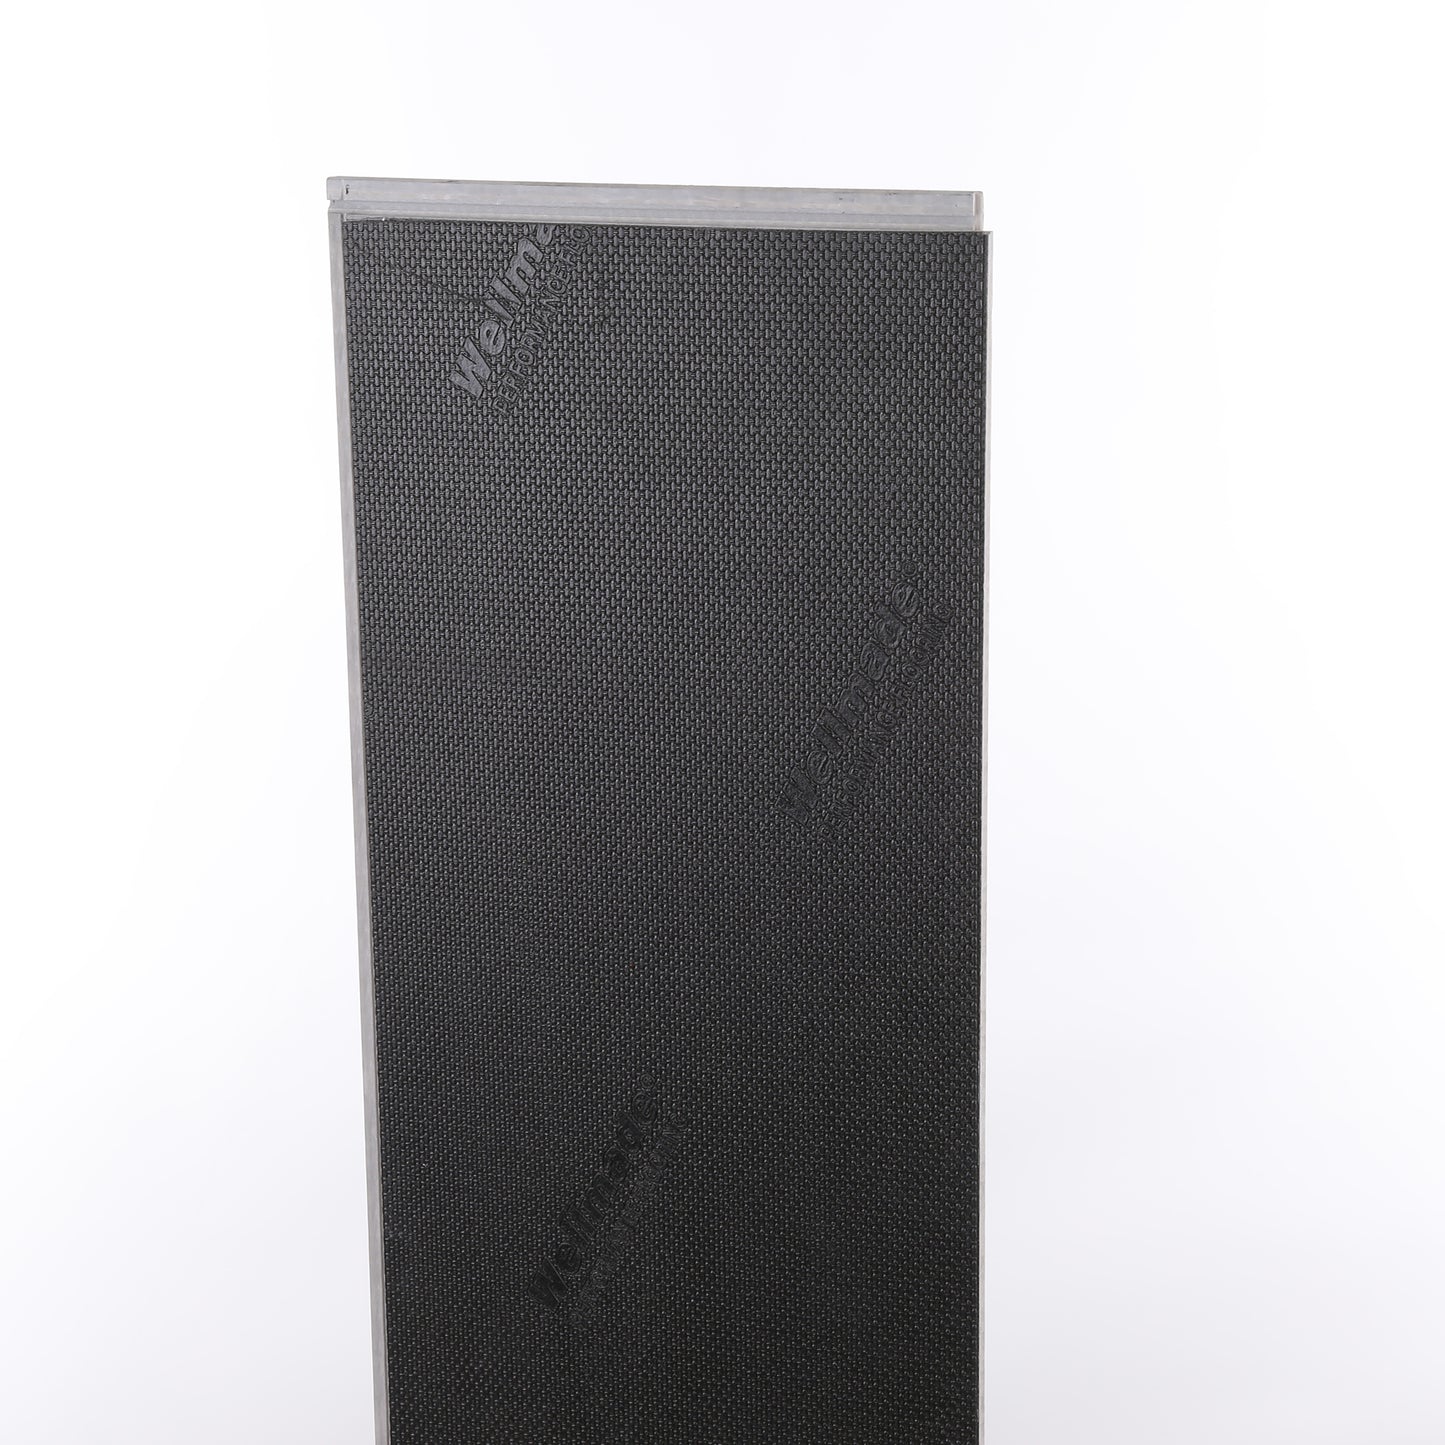 8mm Stormy Gray Waterproof Engineered Hardwood Flooring 7.48 in. Wide x Varying Length Long